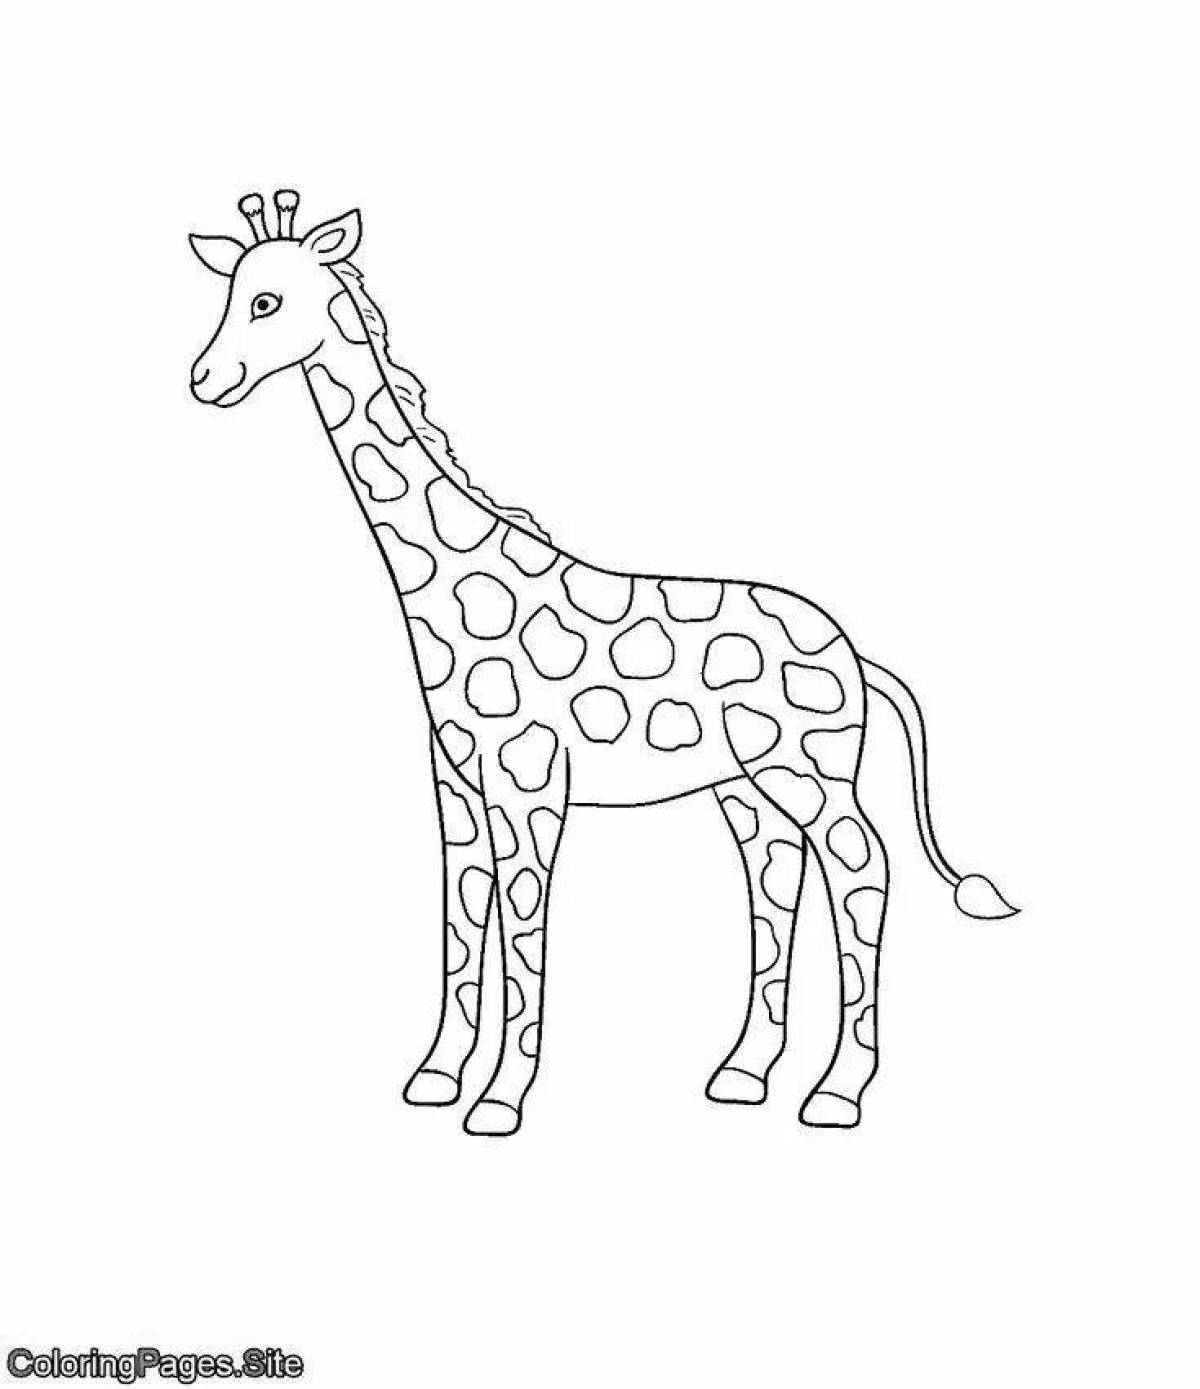 Забавная раскраска жирафа для малышей